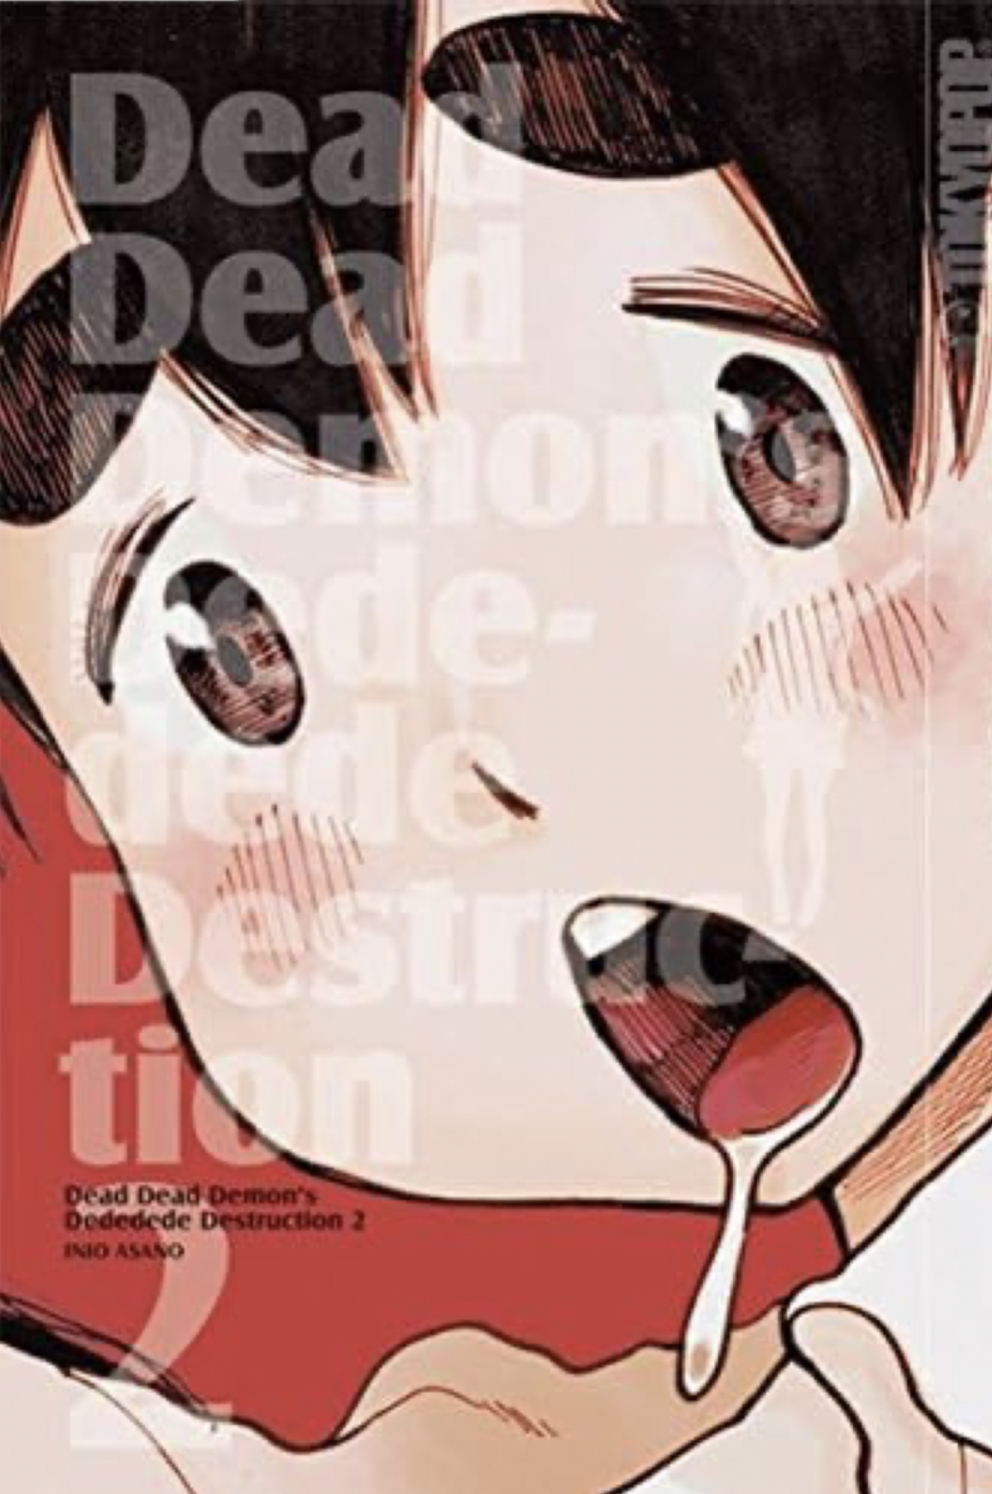 Inio Asano: Dead Dead Demon's Dededede Destruction 2 (Paperback, German language, 2015, Tokyopop GmbH)